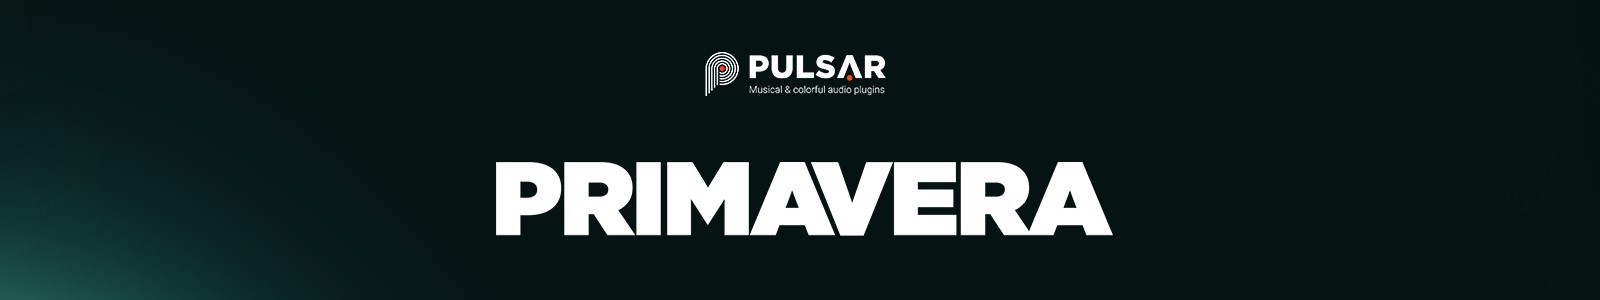 PRIMAVERA by Pulsar Audio